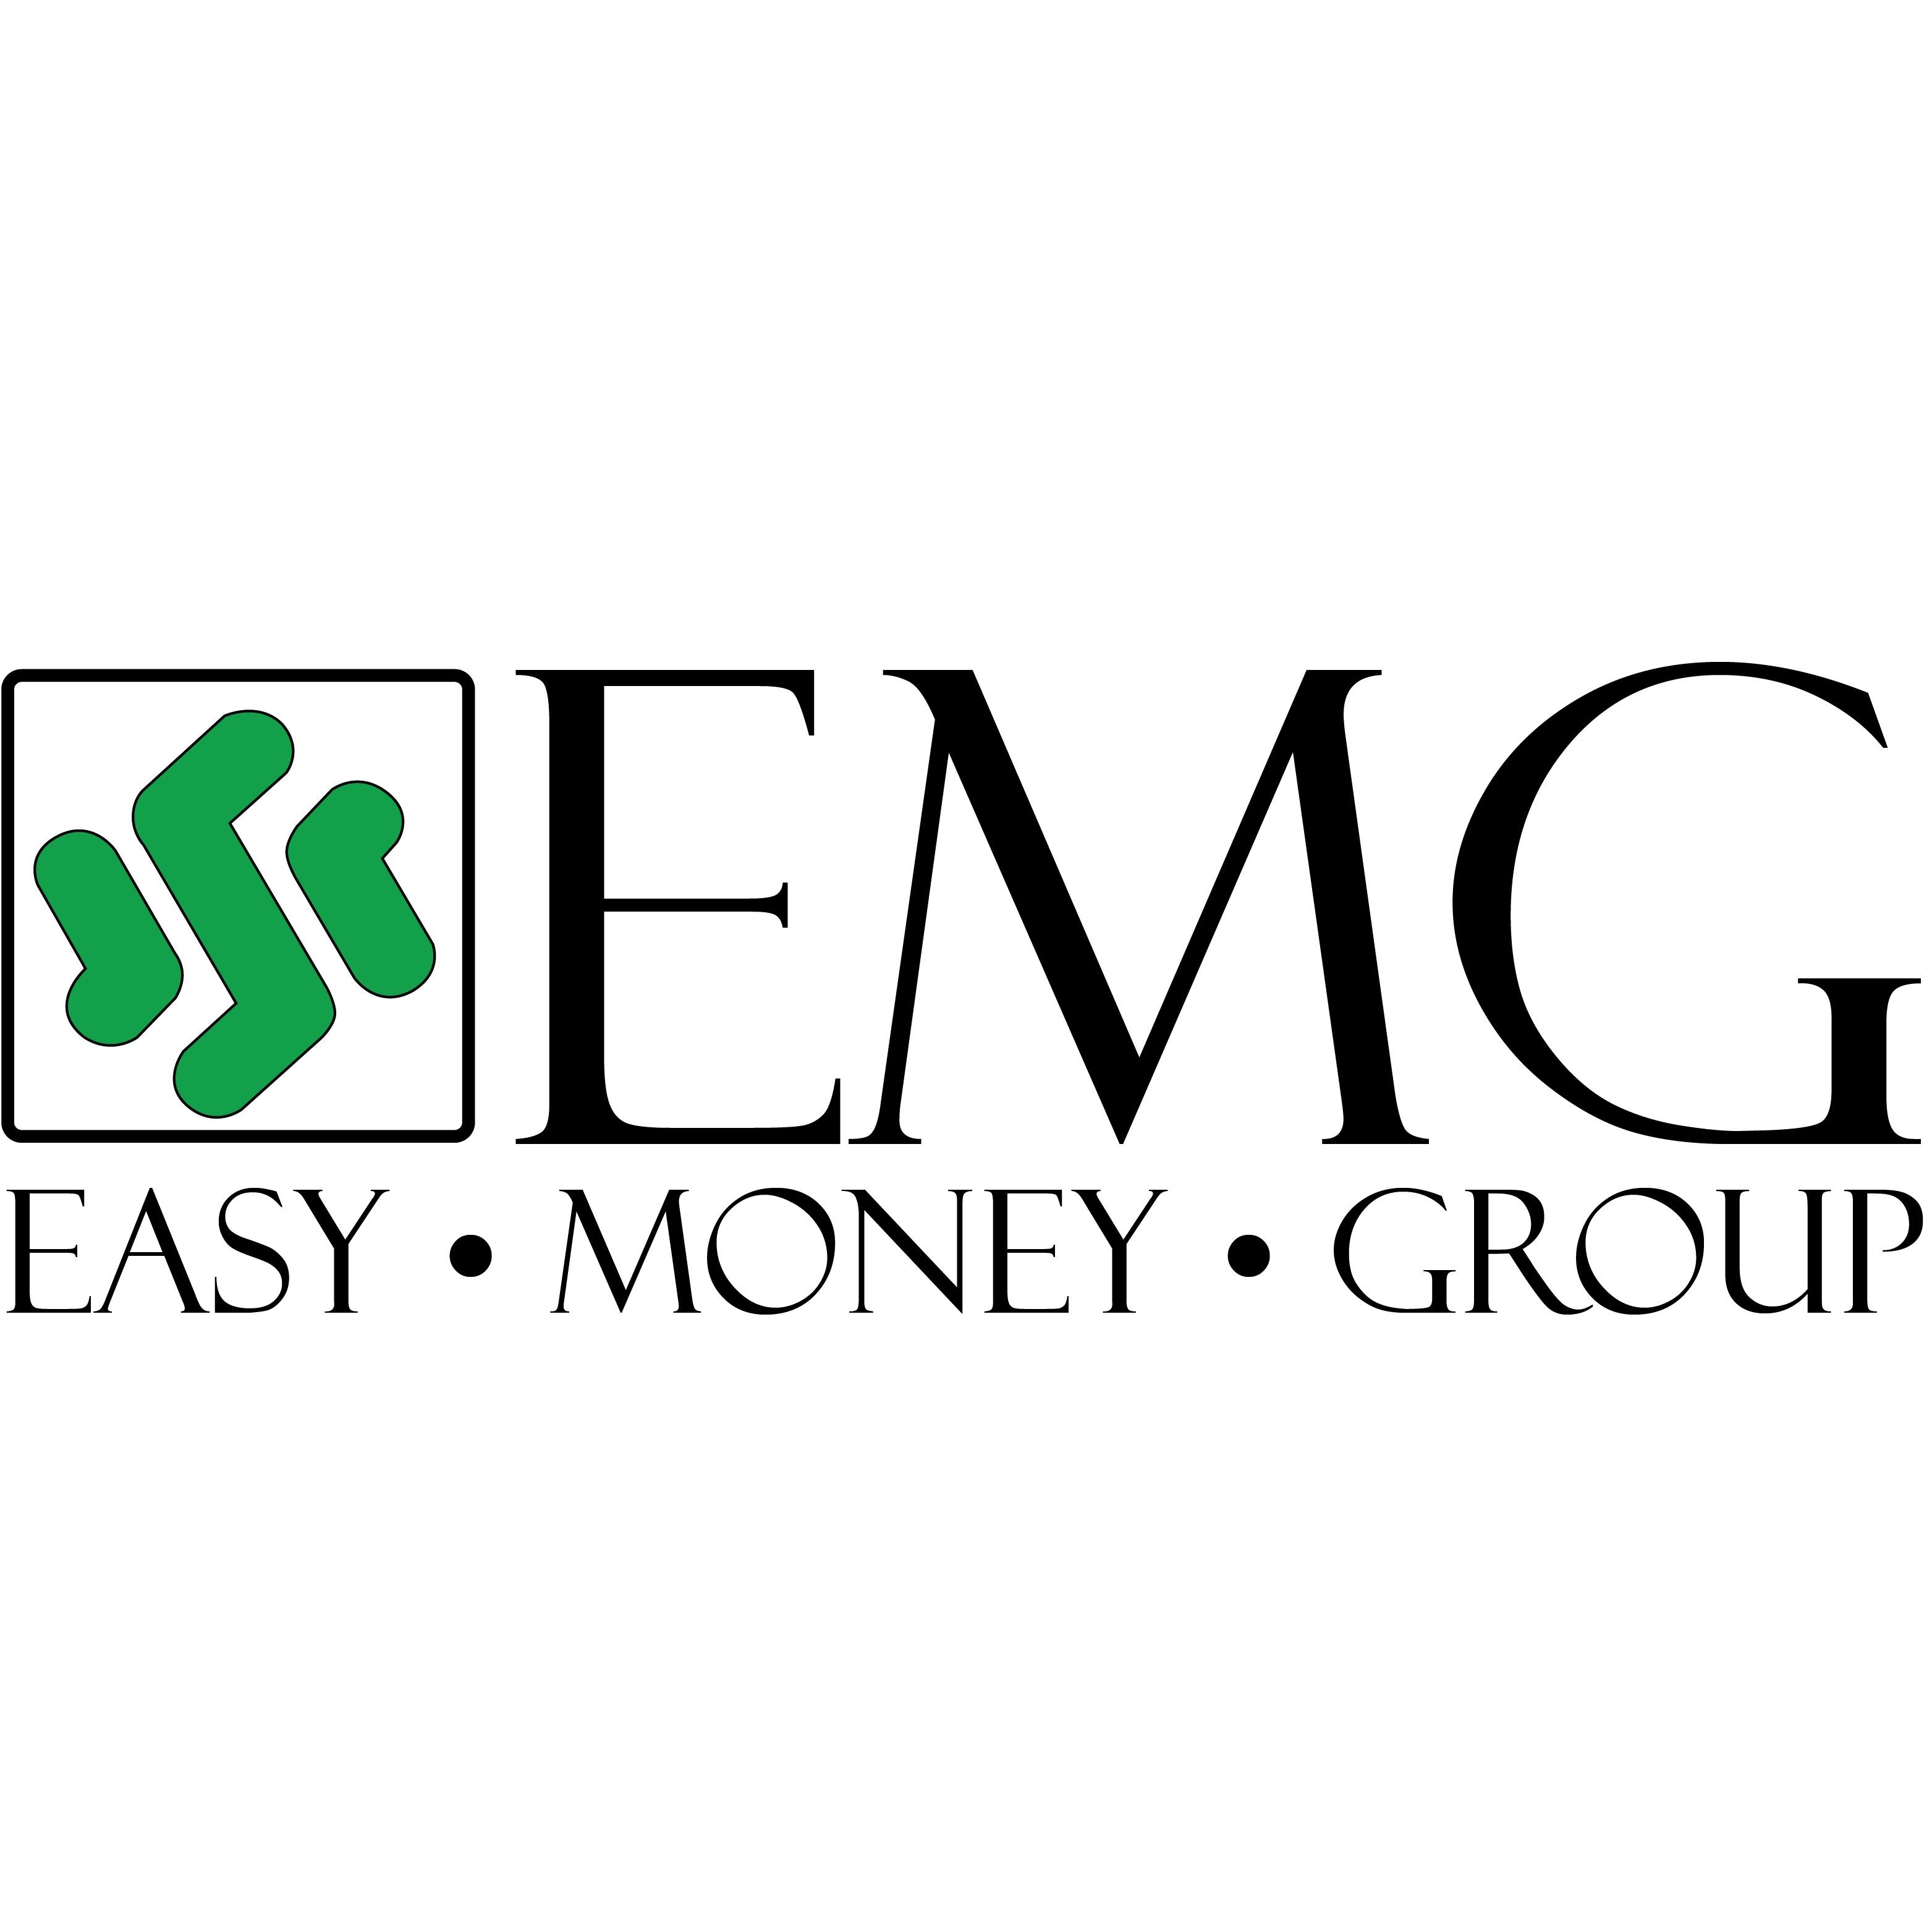 Easy Money EMG - Baton Rouge Photo